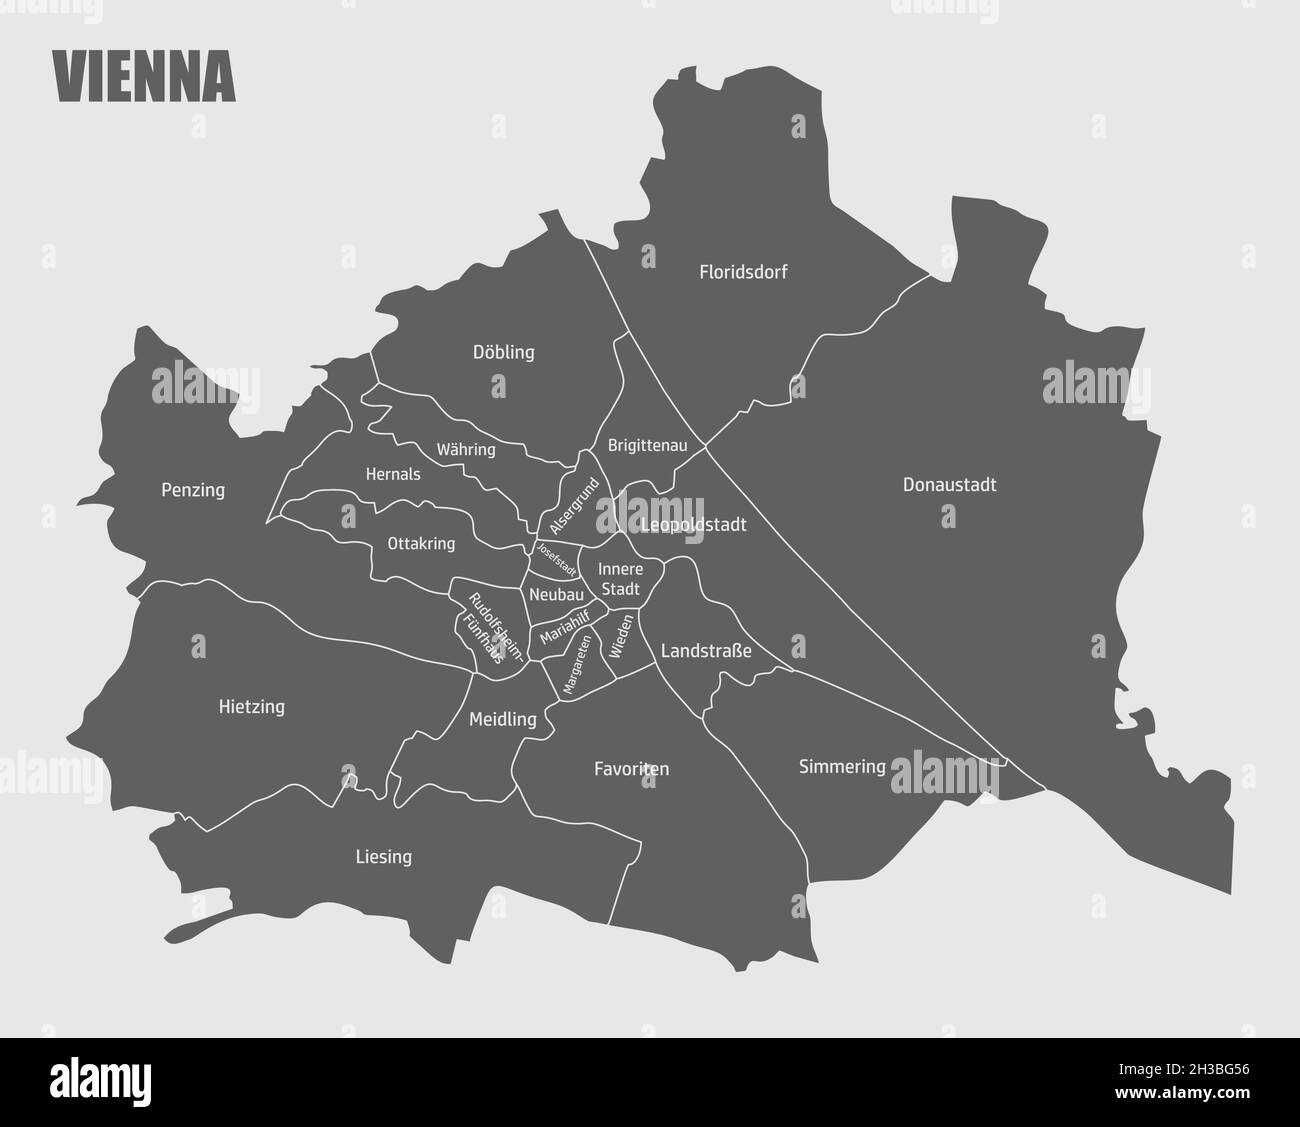 La carte administrative de la ville de Vienne avec des étiquettes, Autriche Illustration de Vecteur